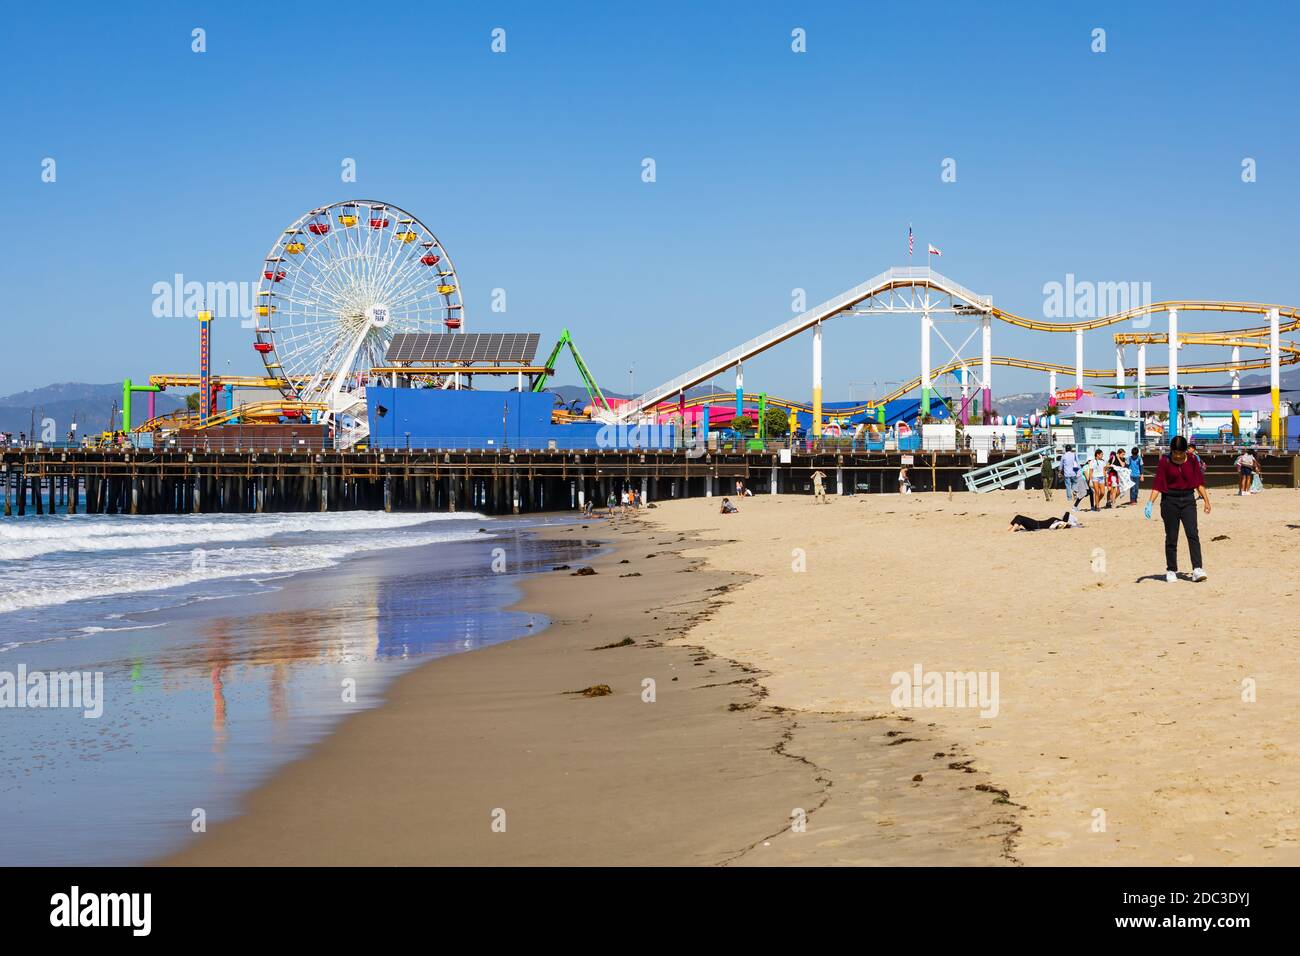 Unterhaltung im Pacific Park. Achterbahn und Riesenrad. Santa Monica Pier und Strand, Santa Monica, Kalifornien, Vereinigte Staaten von Amerika Stockfoto